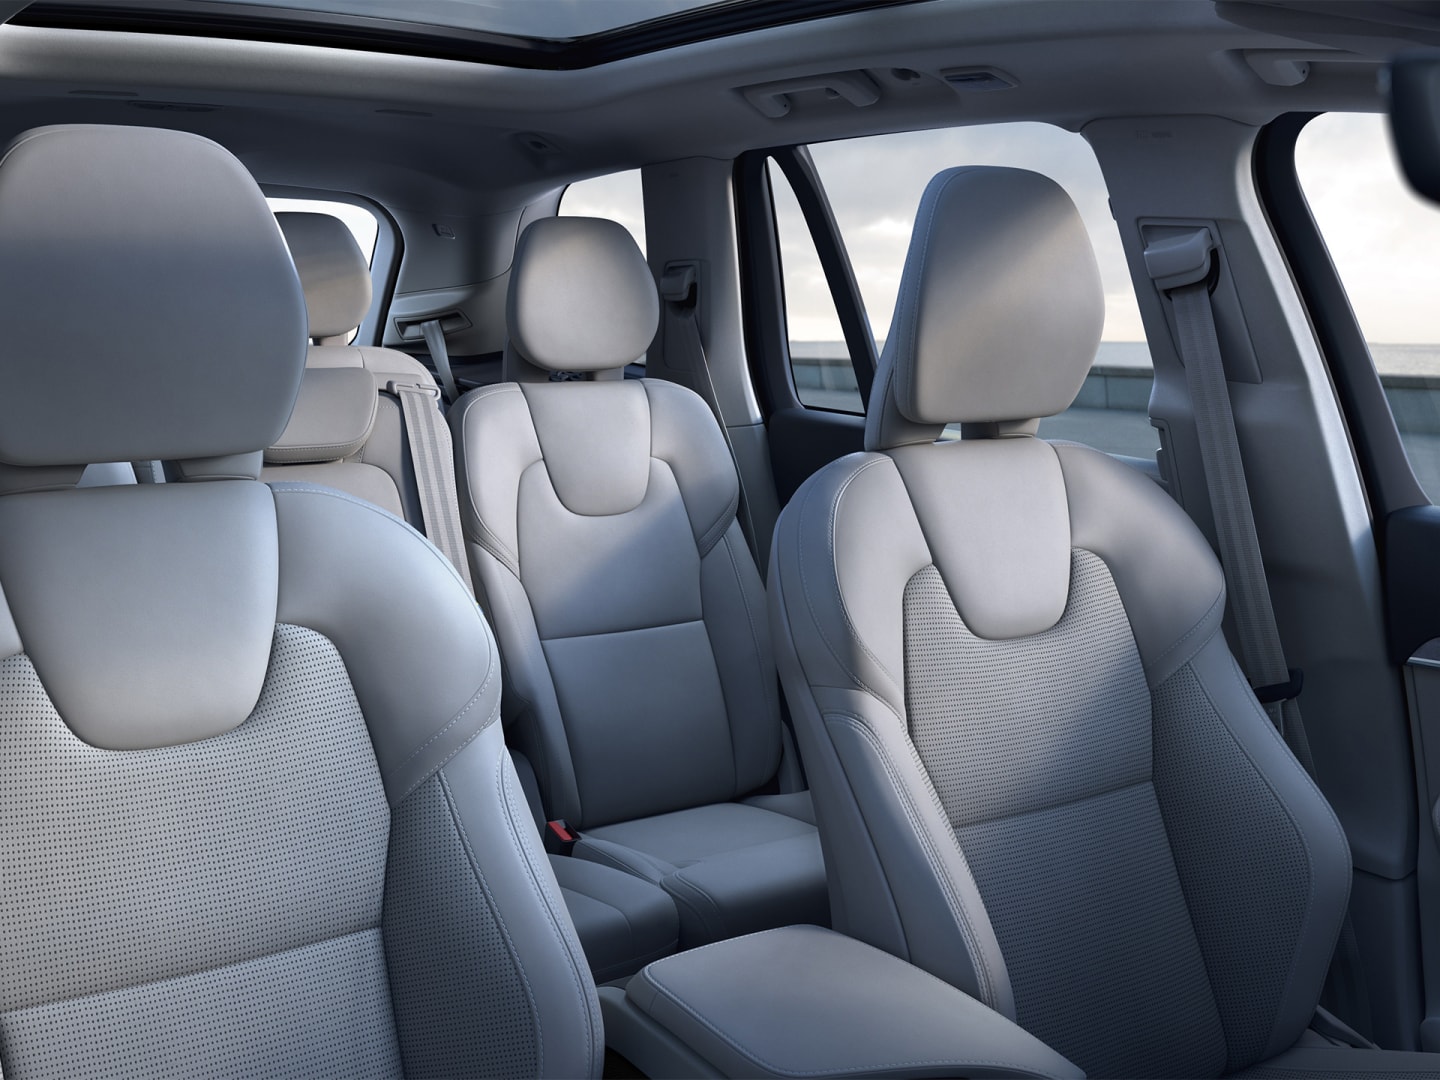 Intérieur spacieux et luxueux du SUV Volvo XC90.